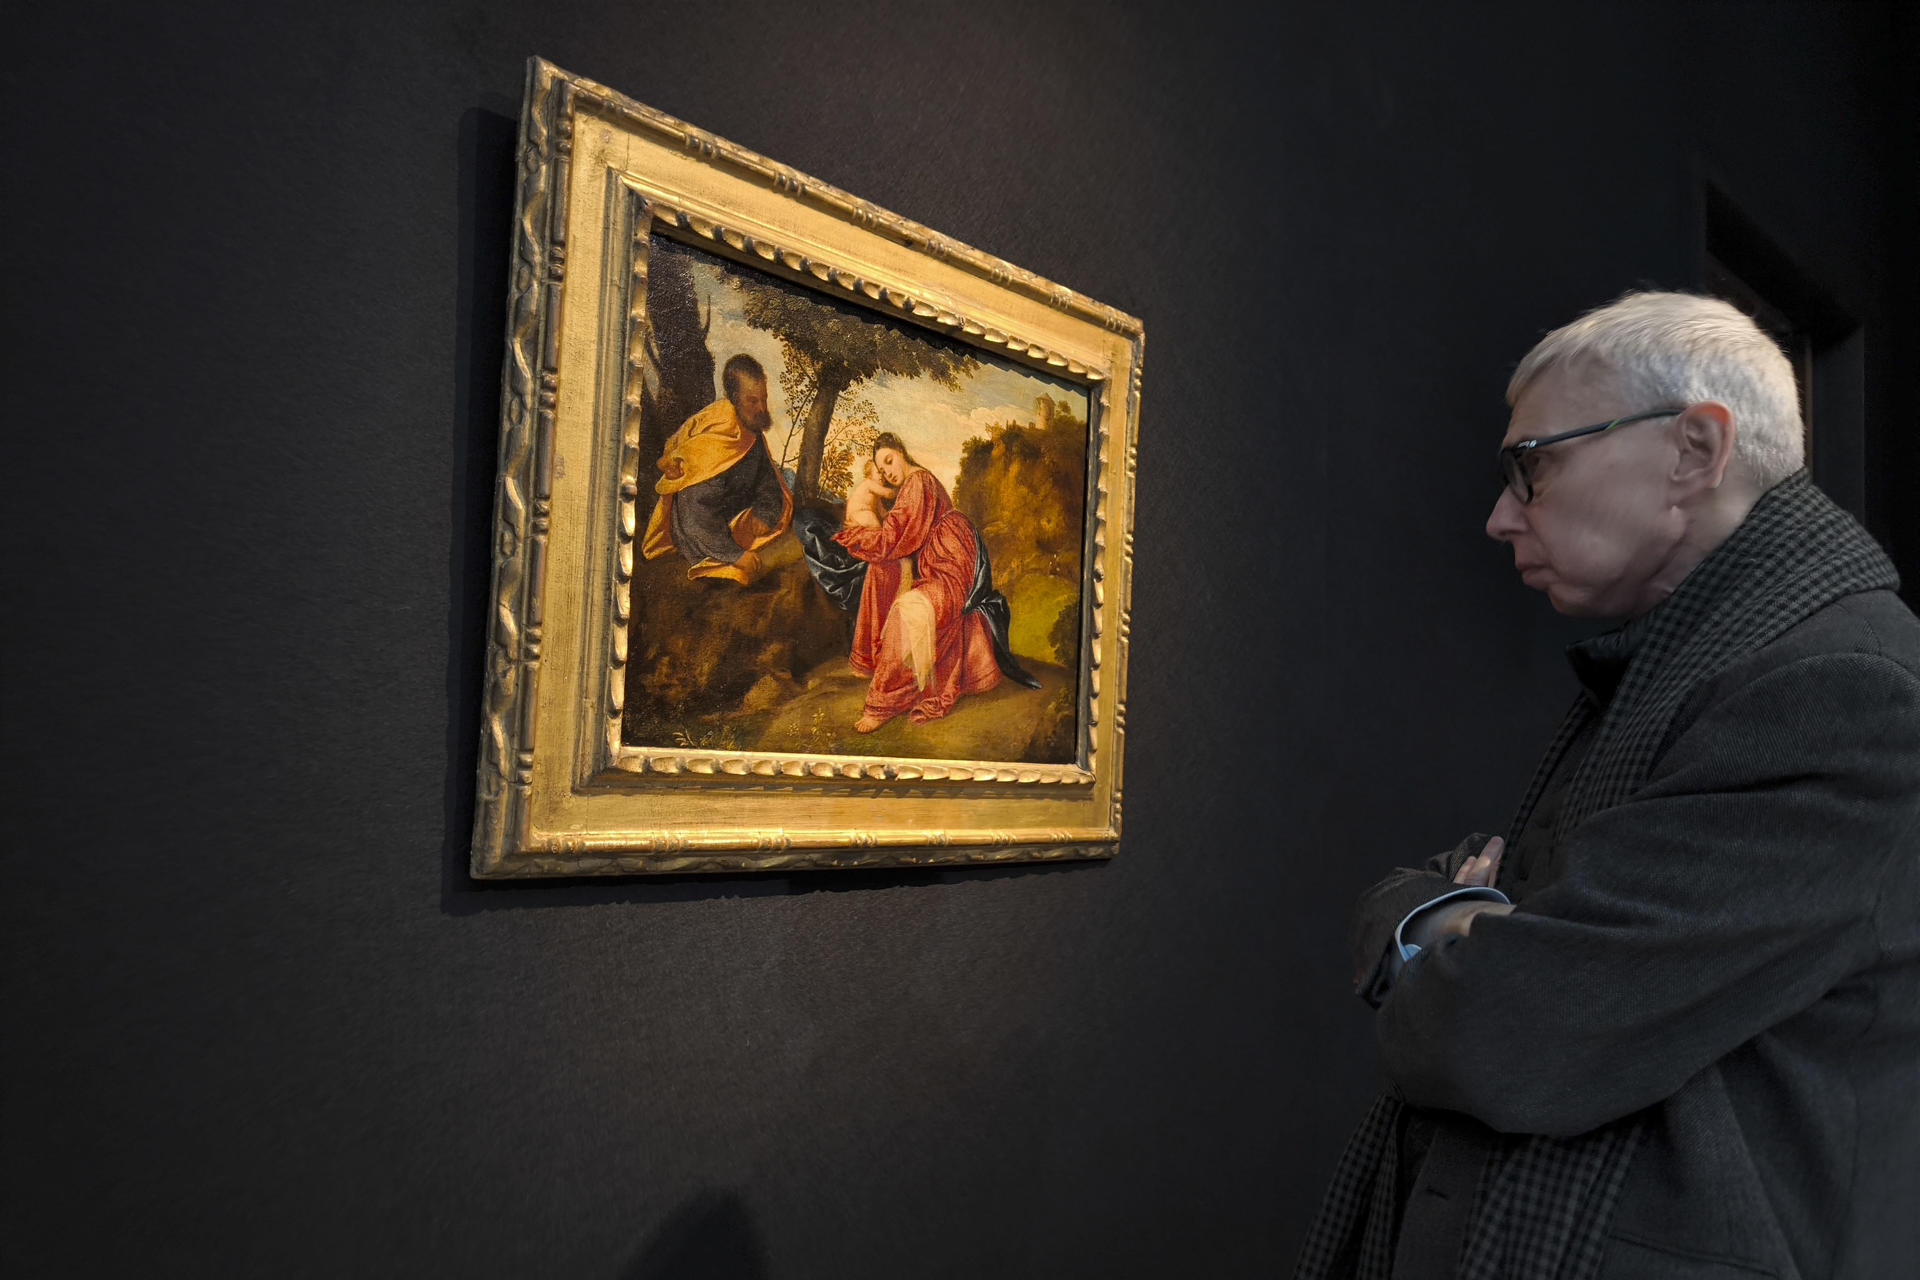 Un hombre observa la obra "Descanso en la huida a Egipto" de Tiziano, que fue descubierta metida en una bolsa de plástico en una parada de autobús en Richmond (Londres), y que este martes sale a la venta en una subasta de la casa Christie's. Pintado cuando el artista tenía apenas 20 años, esta obra maestra fue documentada por primera vez en la colección de un marchante de especias veneciano a comienzos del siglo XVII. EFE/ G. Garrido